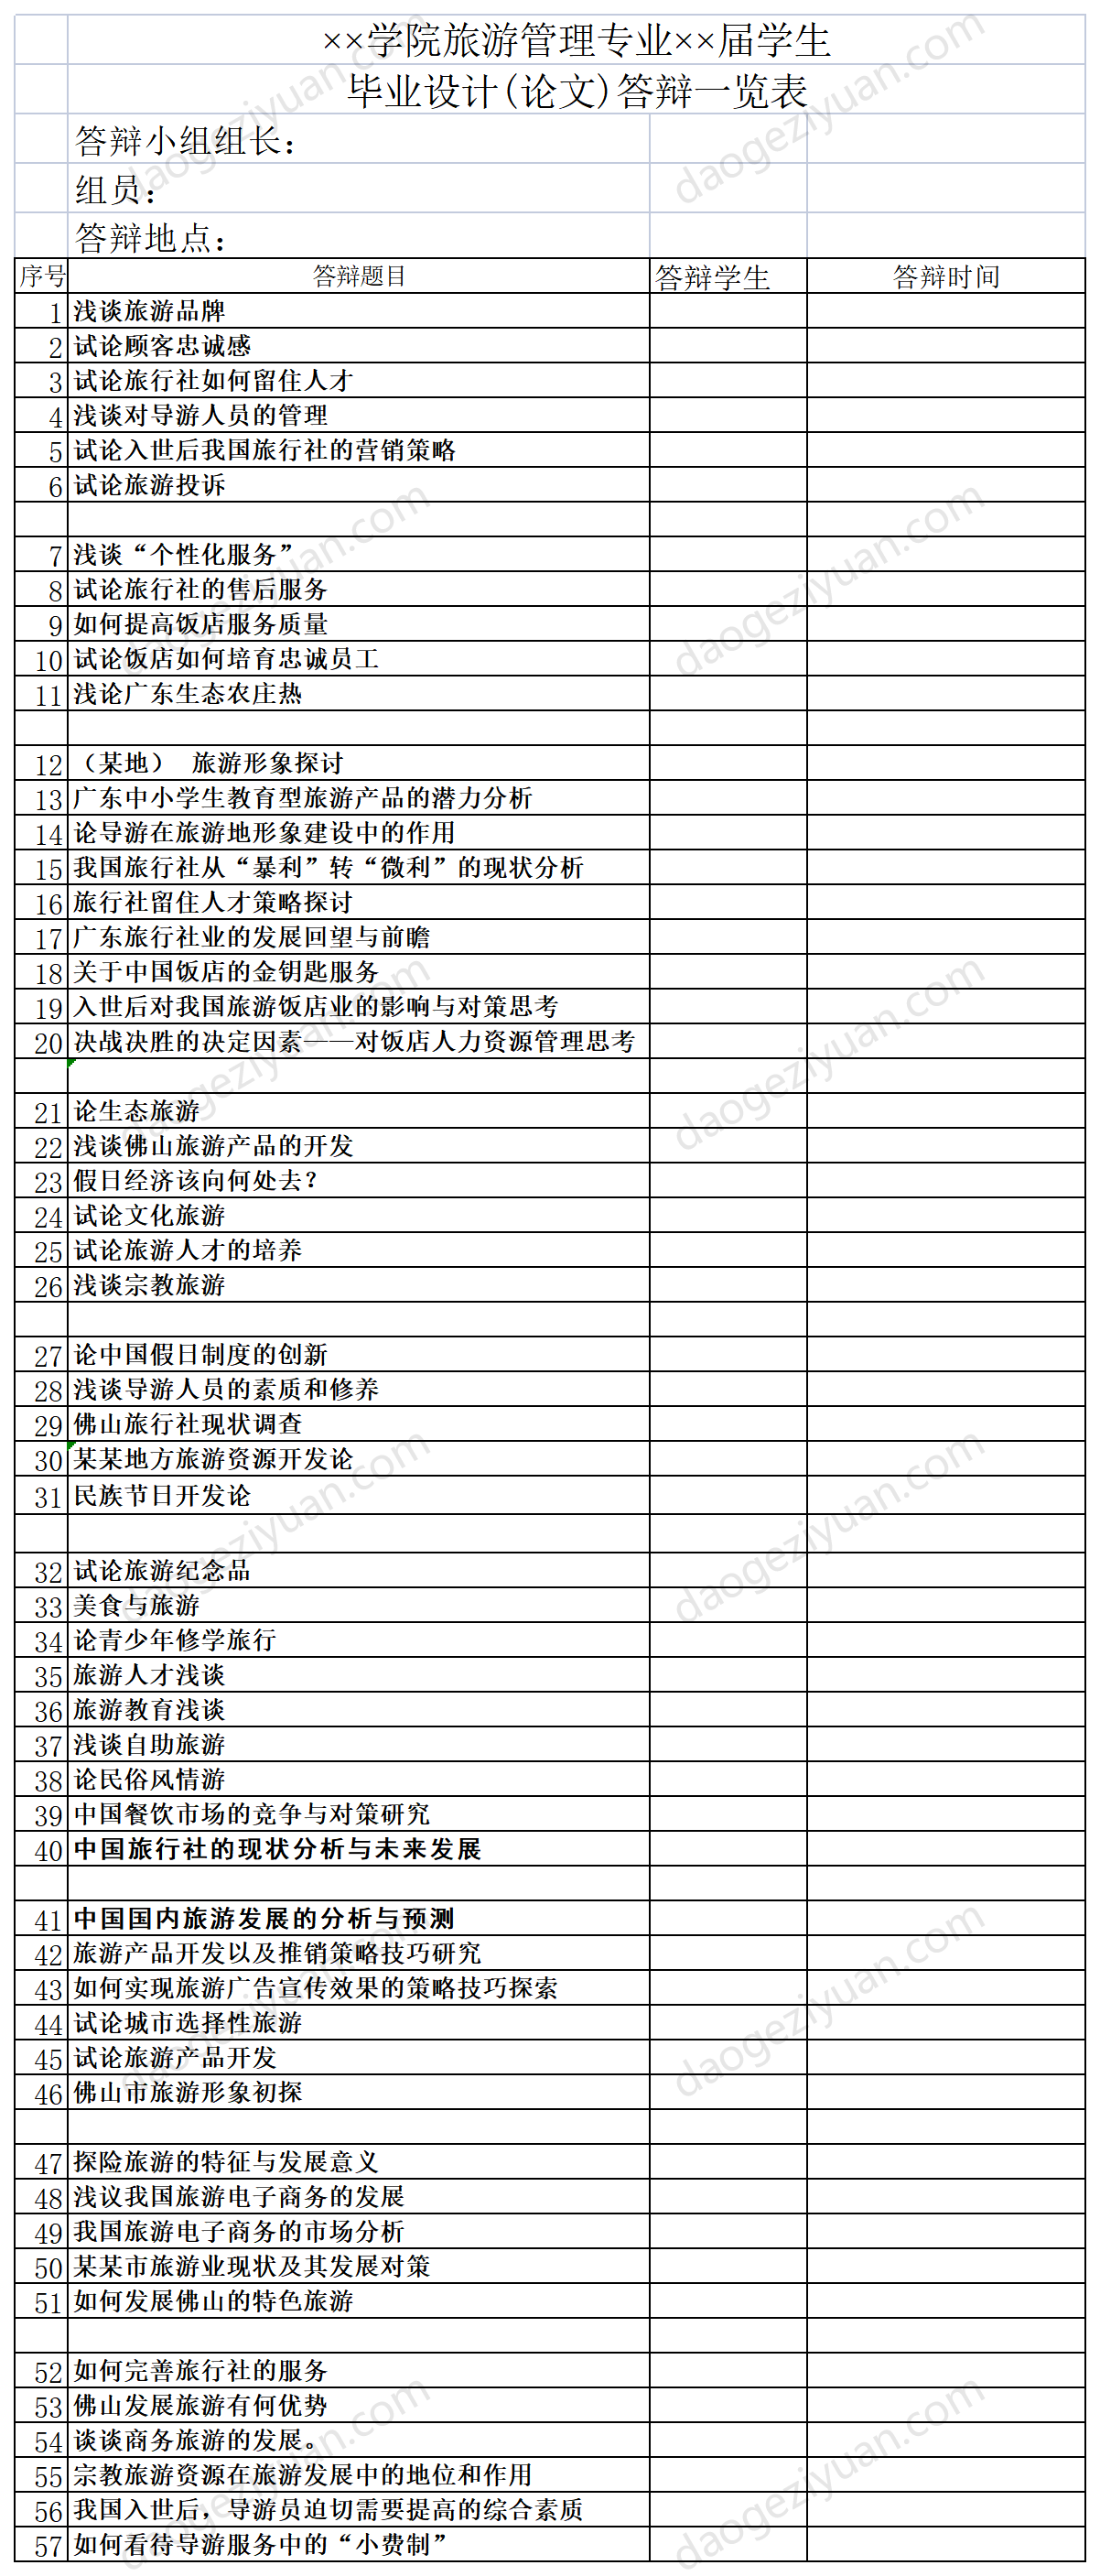 Graduation project (thesis) defense list.xls